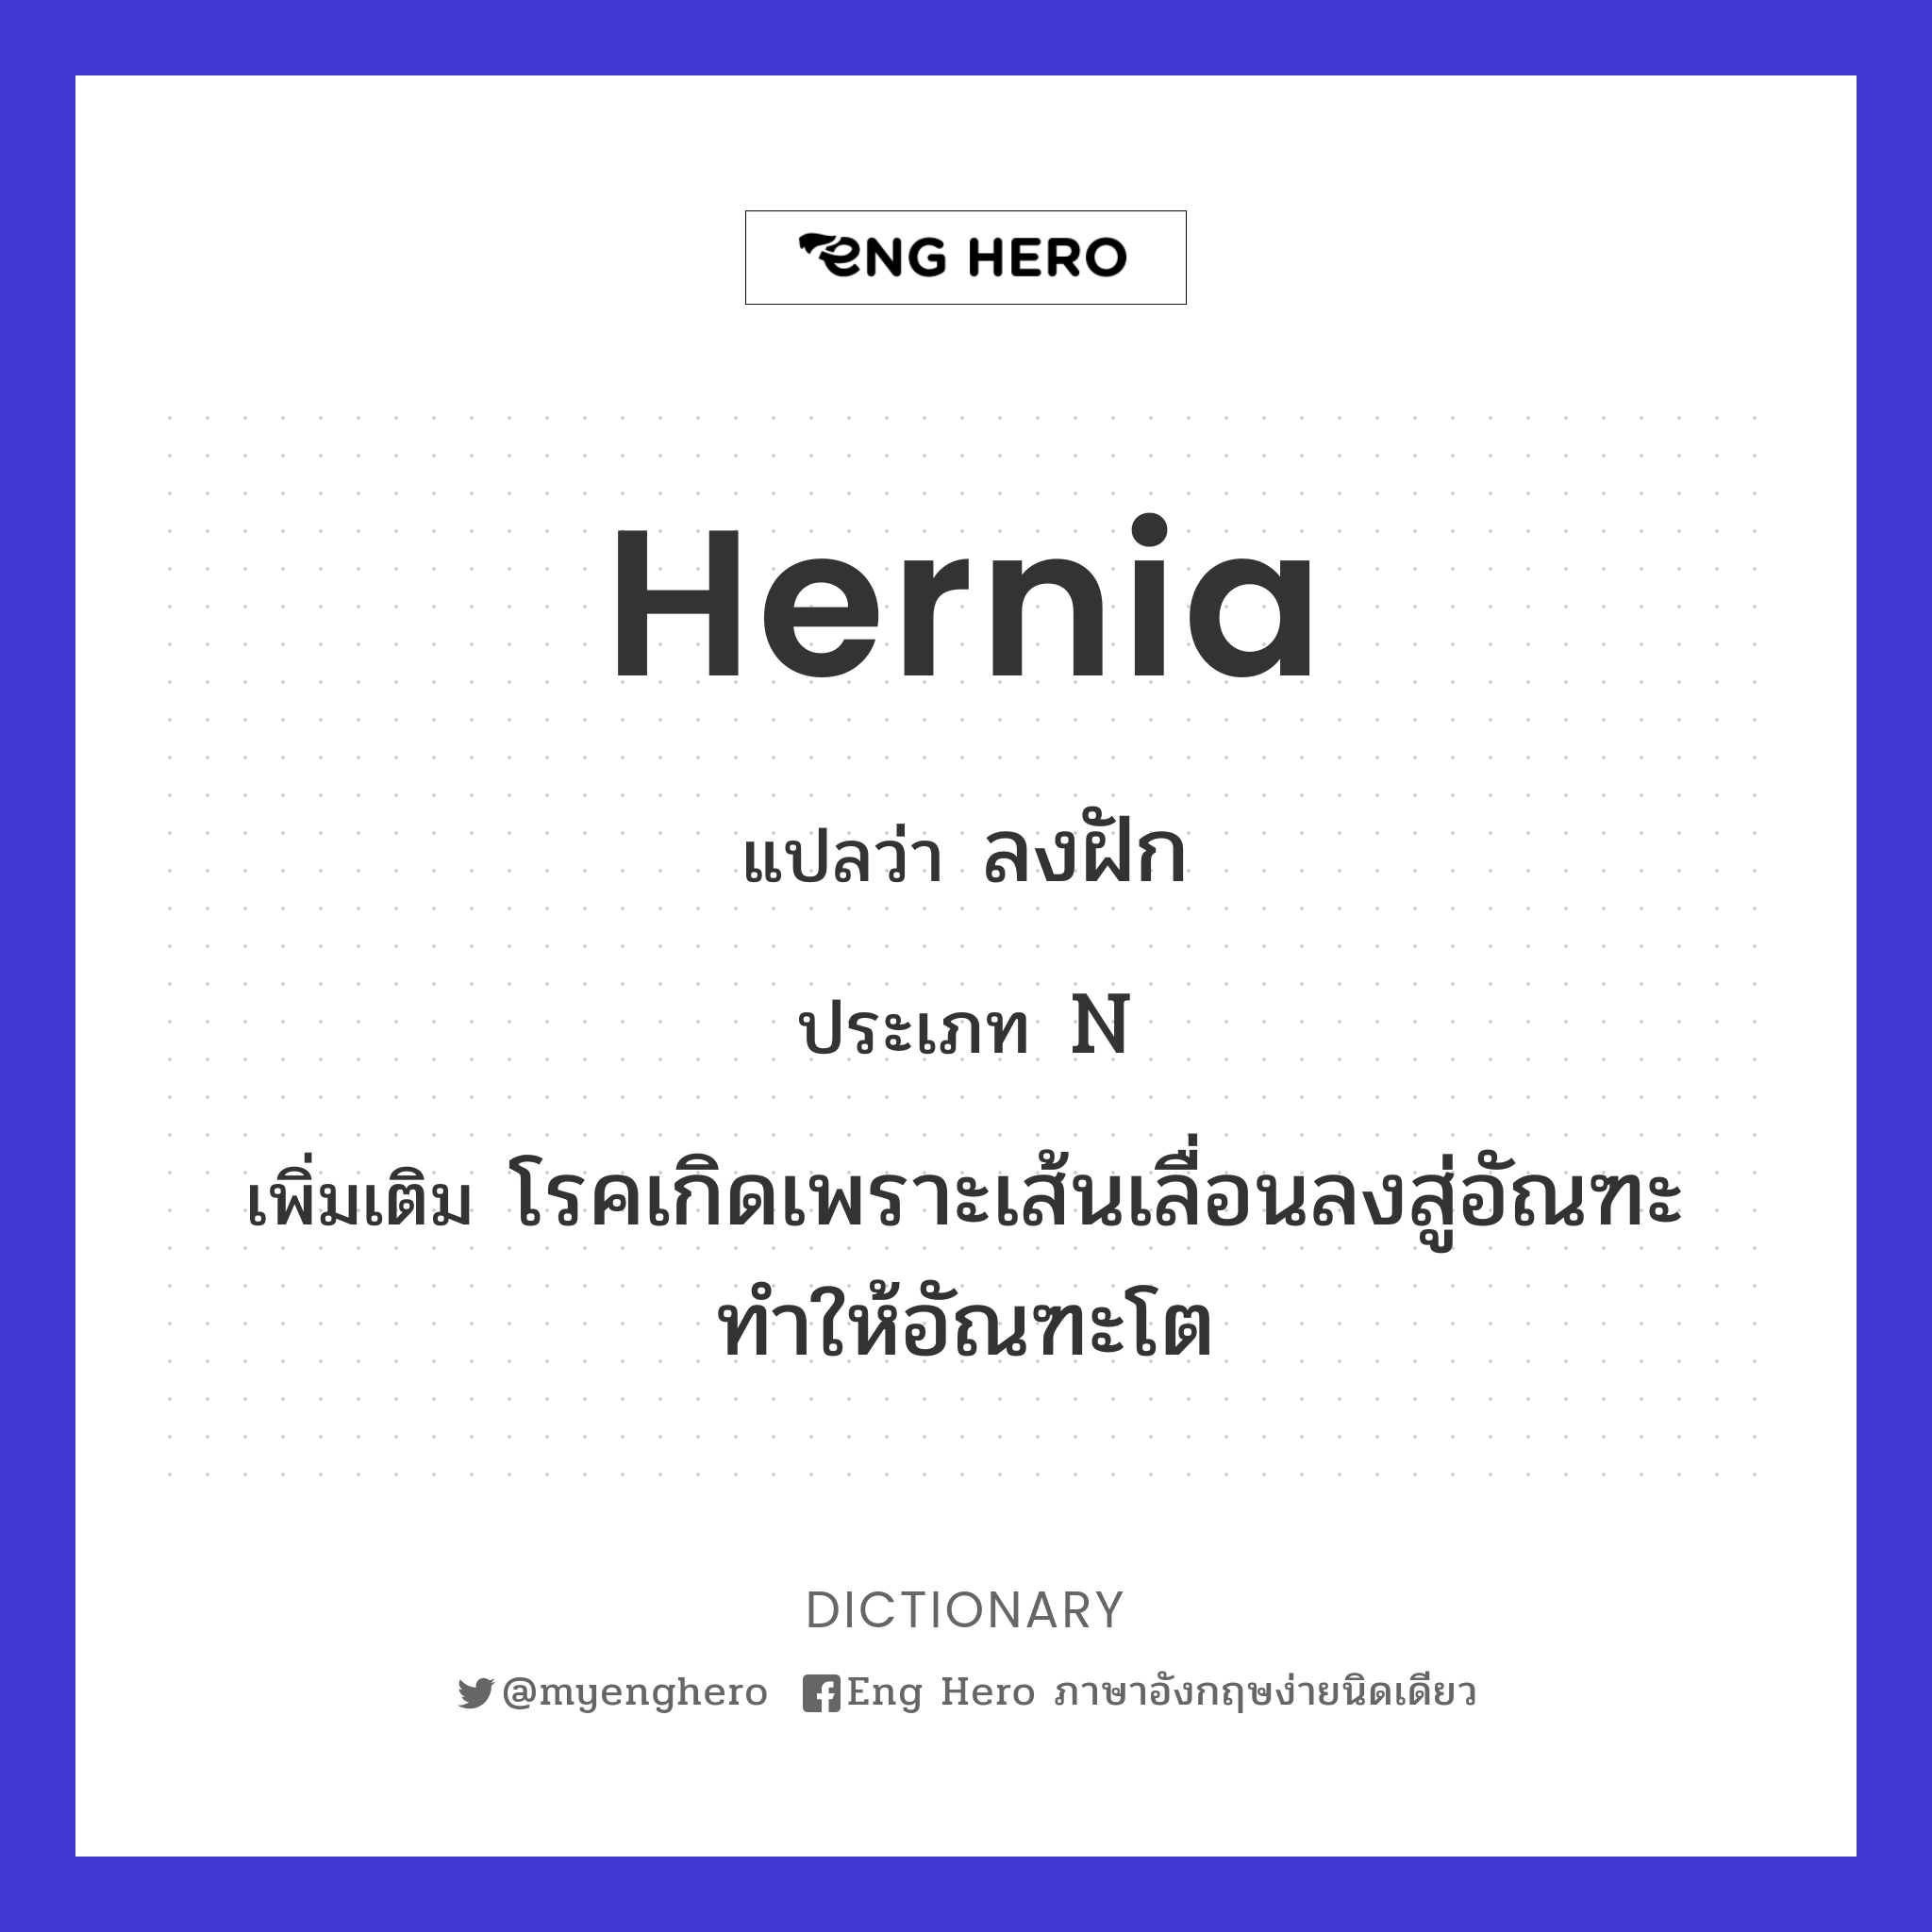 hernia